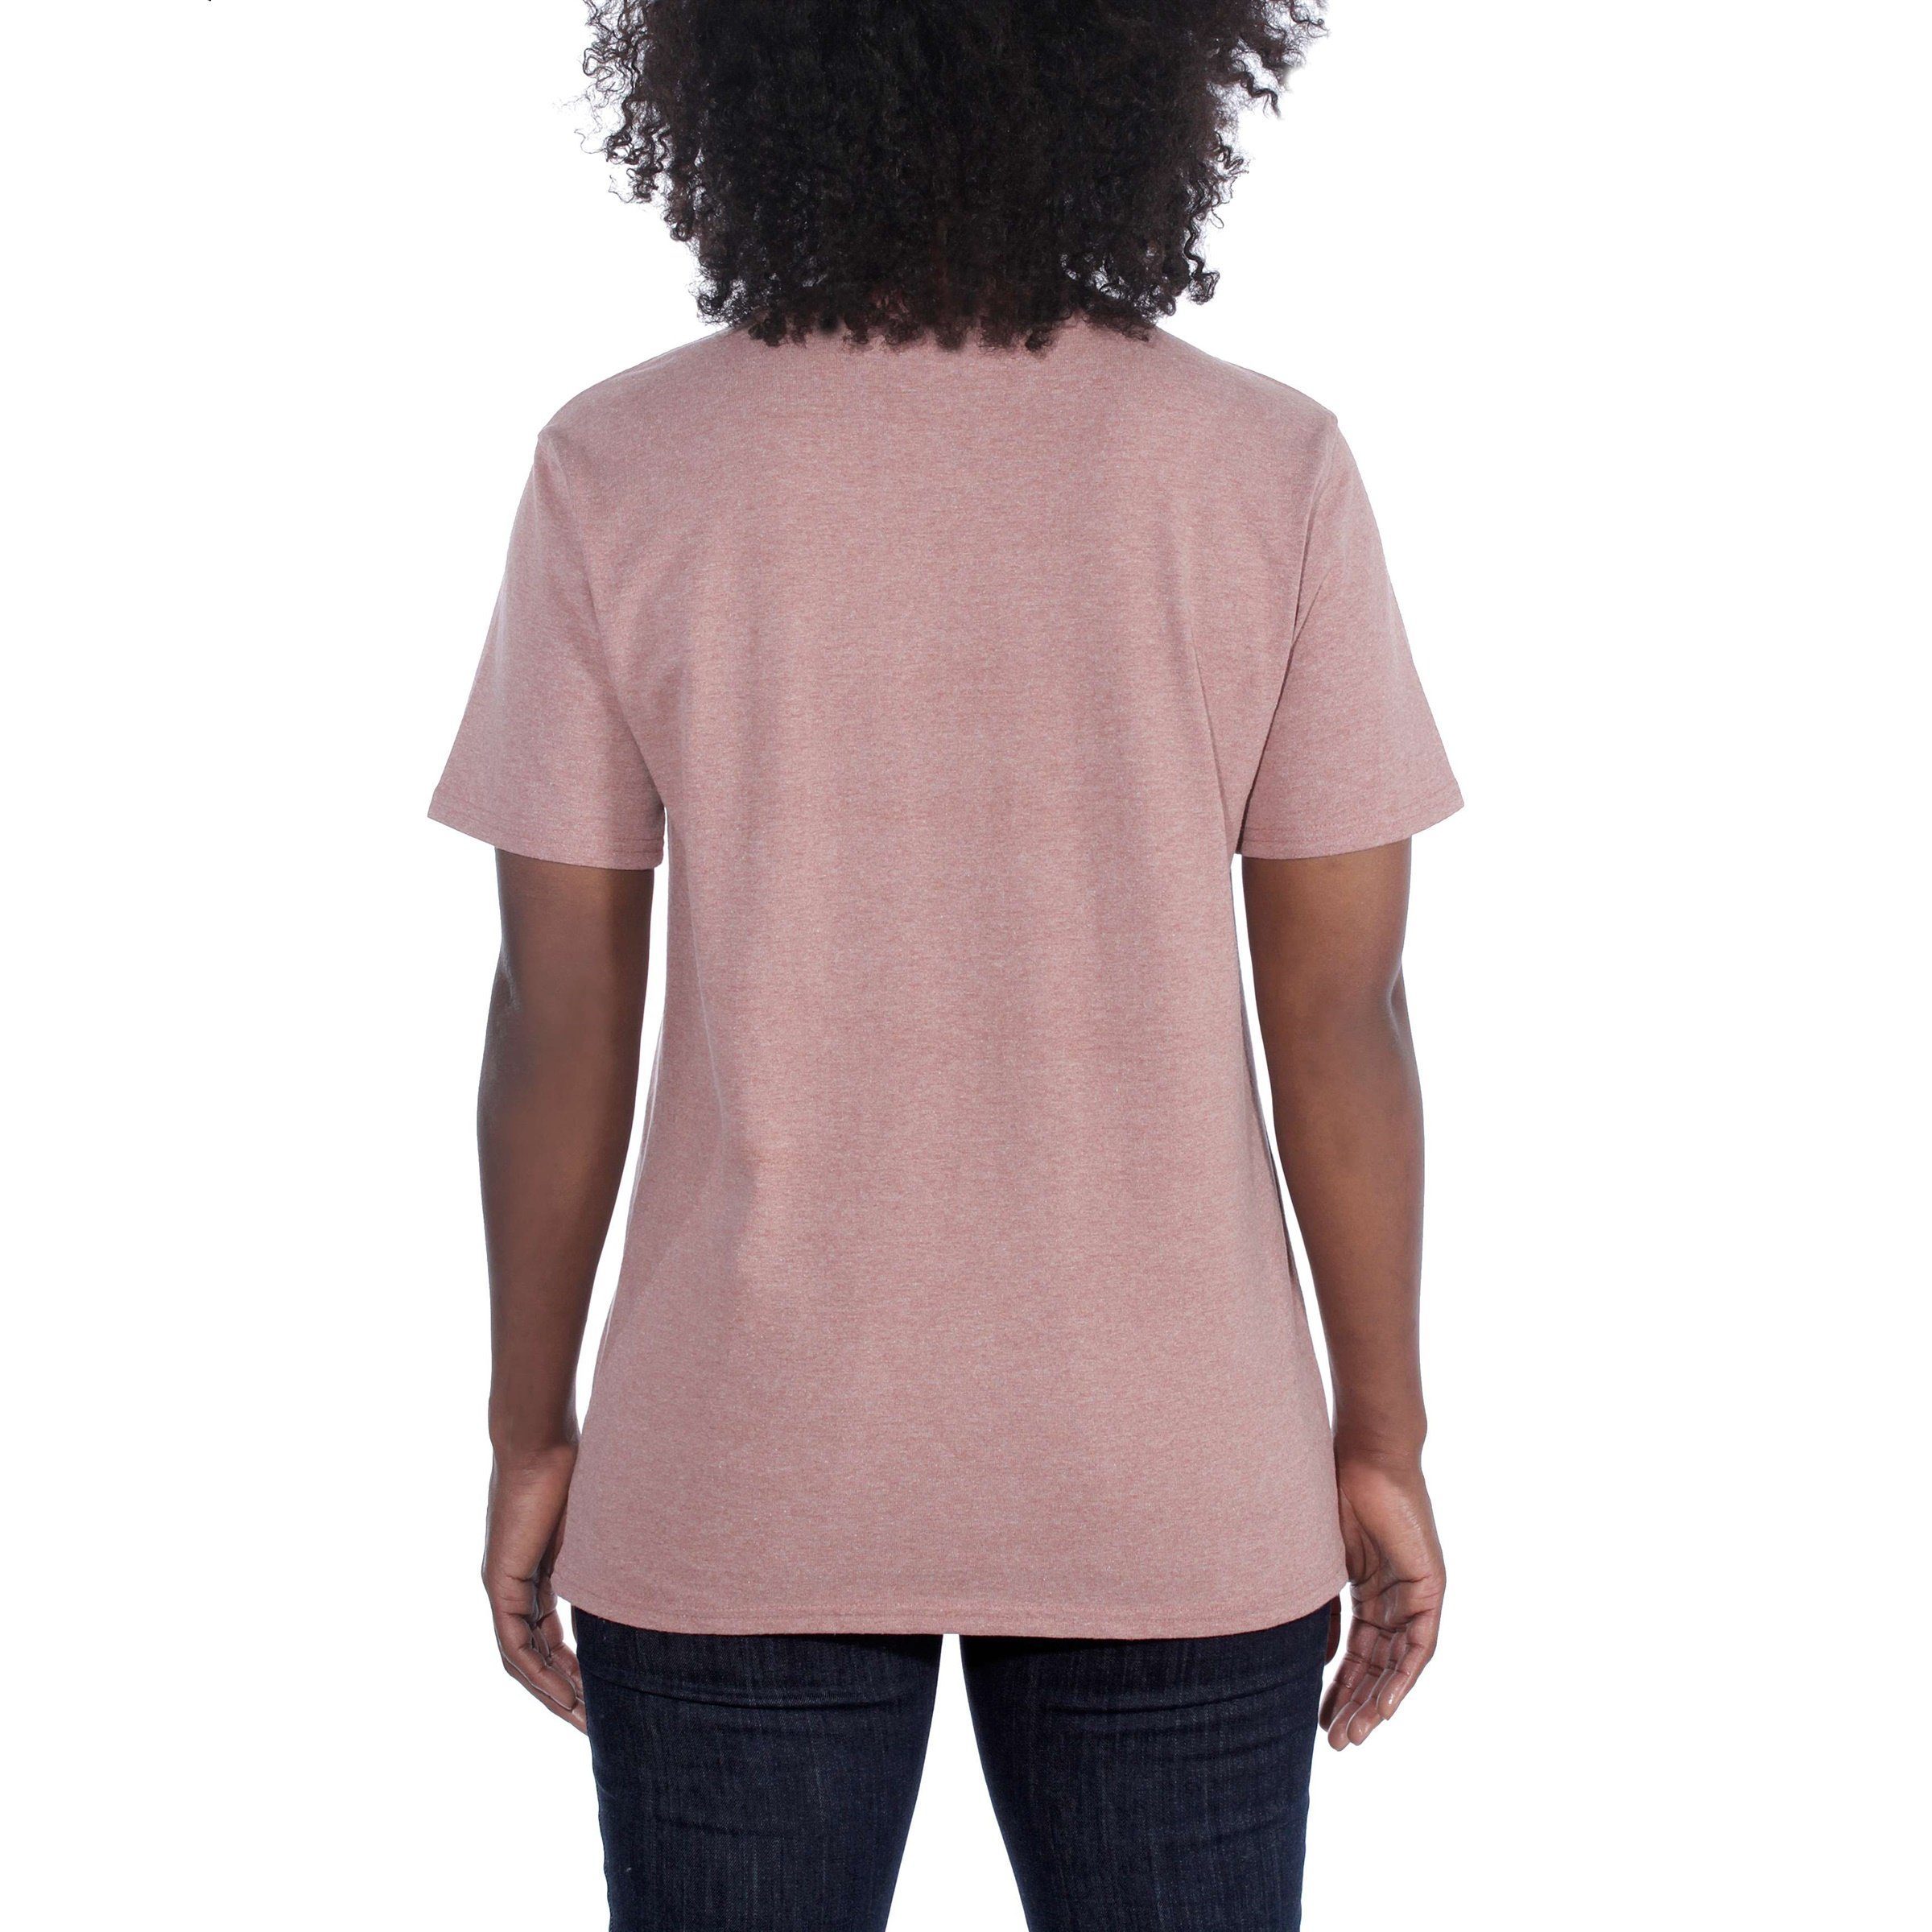 T-Shirt Carhartt Pocket Damen Heavyweight pale Short-Sleeve Fit Adult Loose T-Shirt Carhartt sun